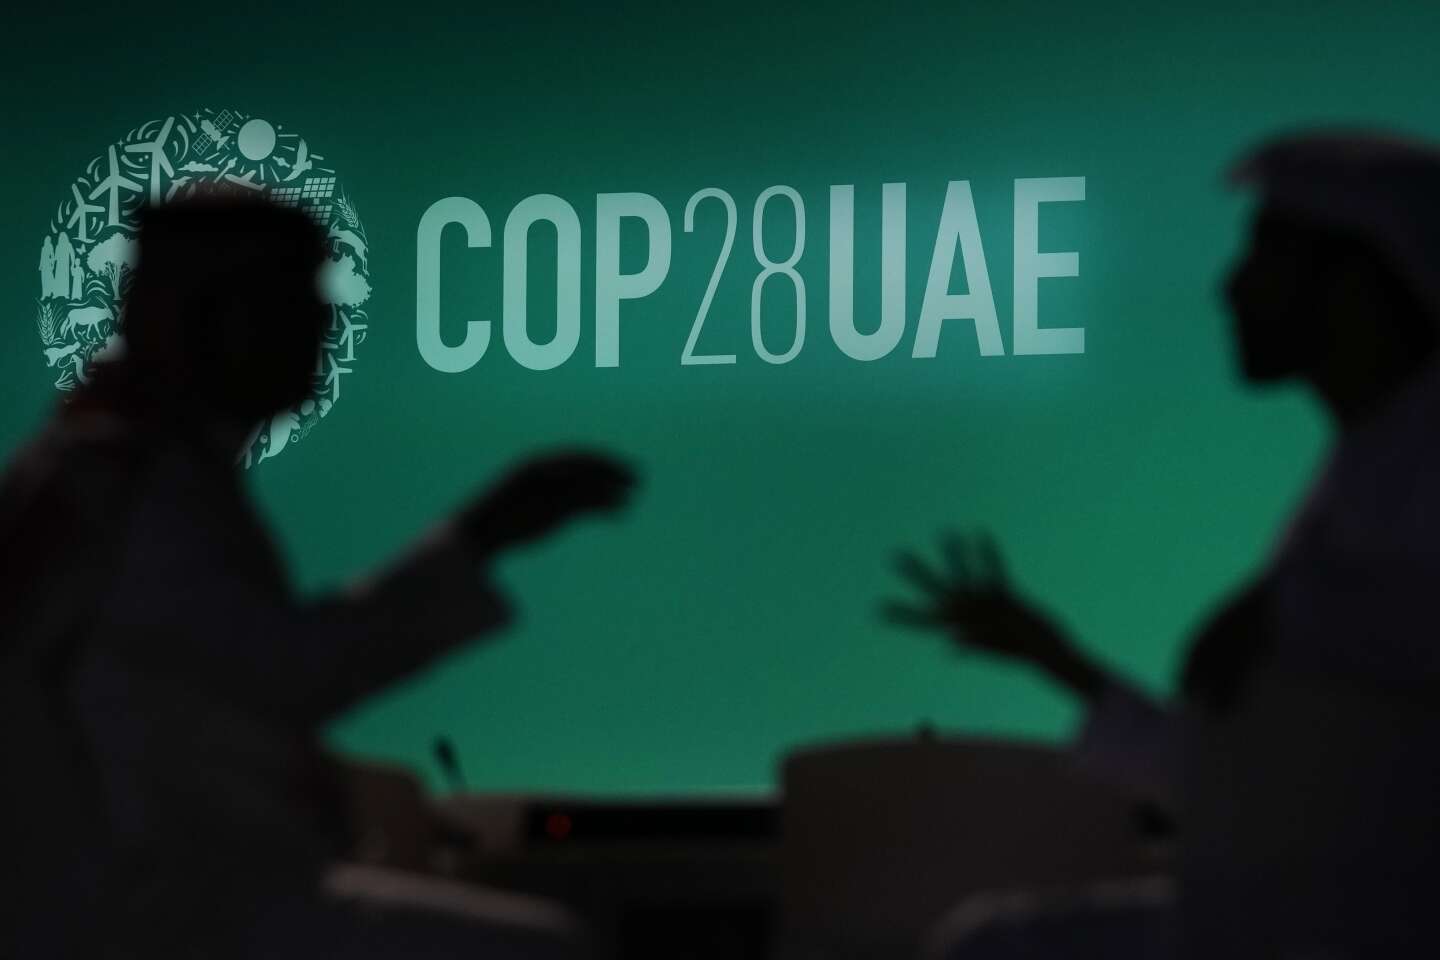 COP28 : comprendre les trois sujets de crispation qui seront au cœur des débats